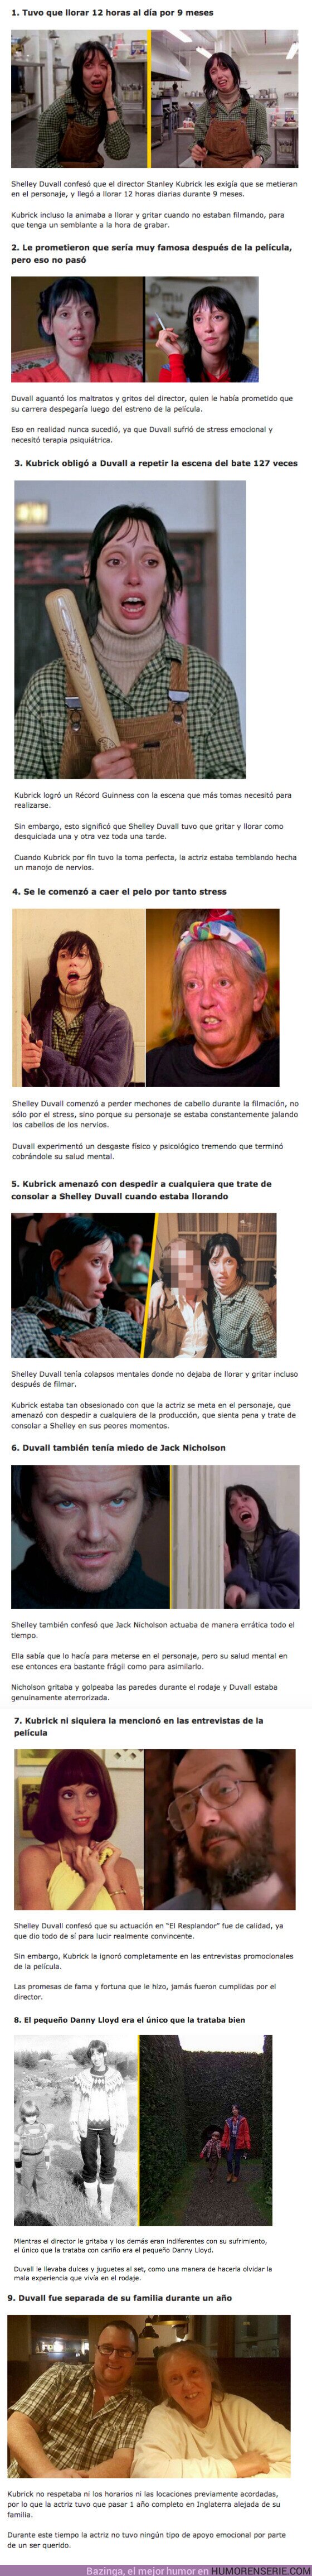 78590 - GALERÍA: 9 Maltratos que aguantó Shelley Duvall durante el rodaje de “El Resplandor”